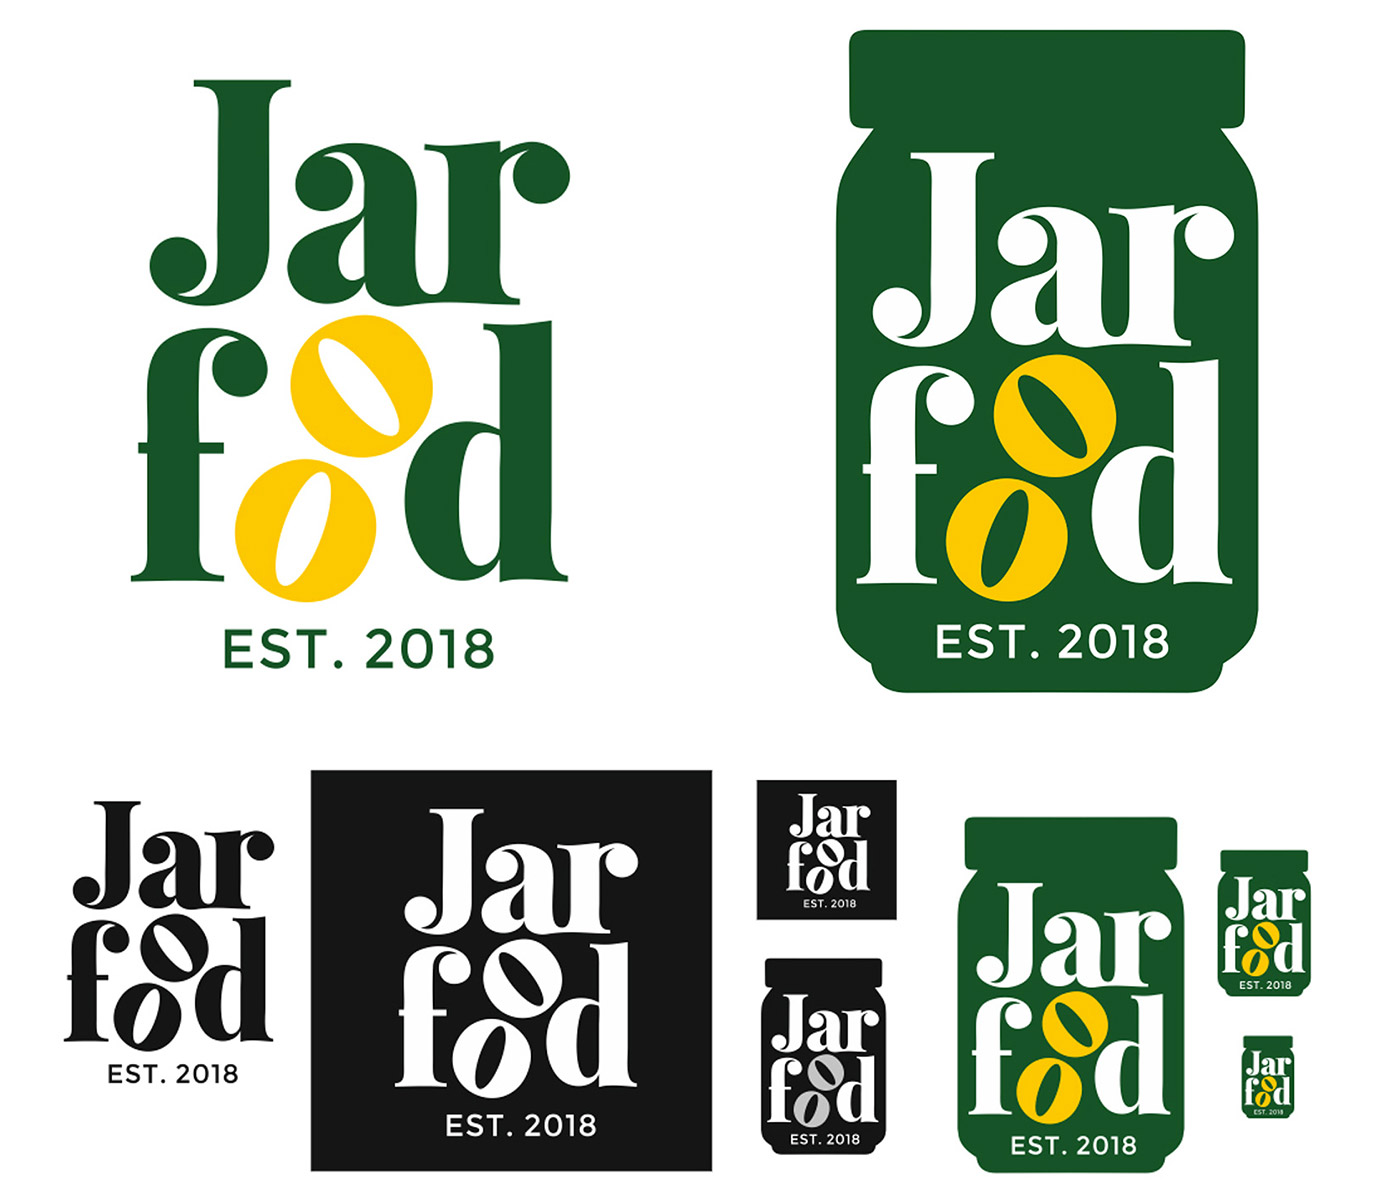 jarfood company logo design